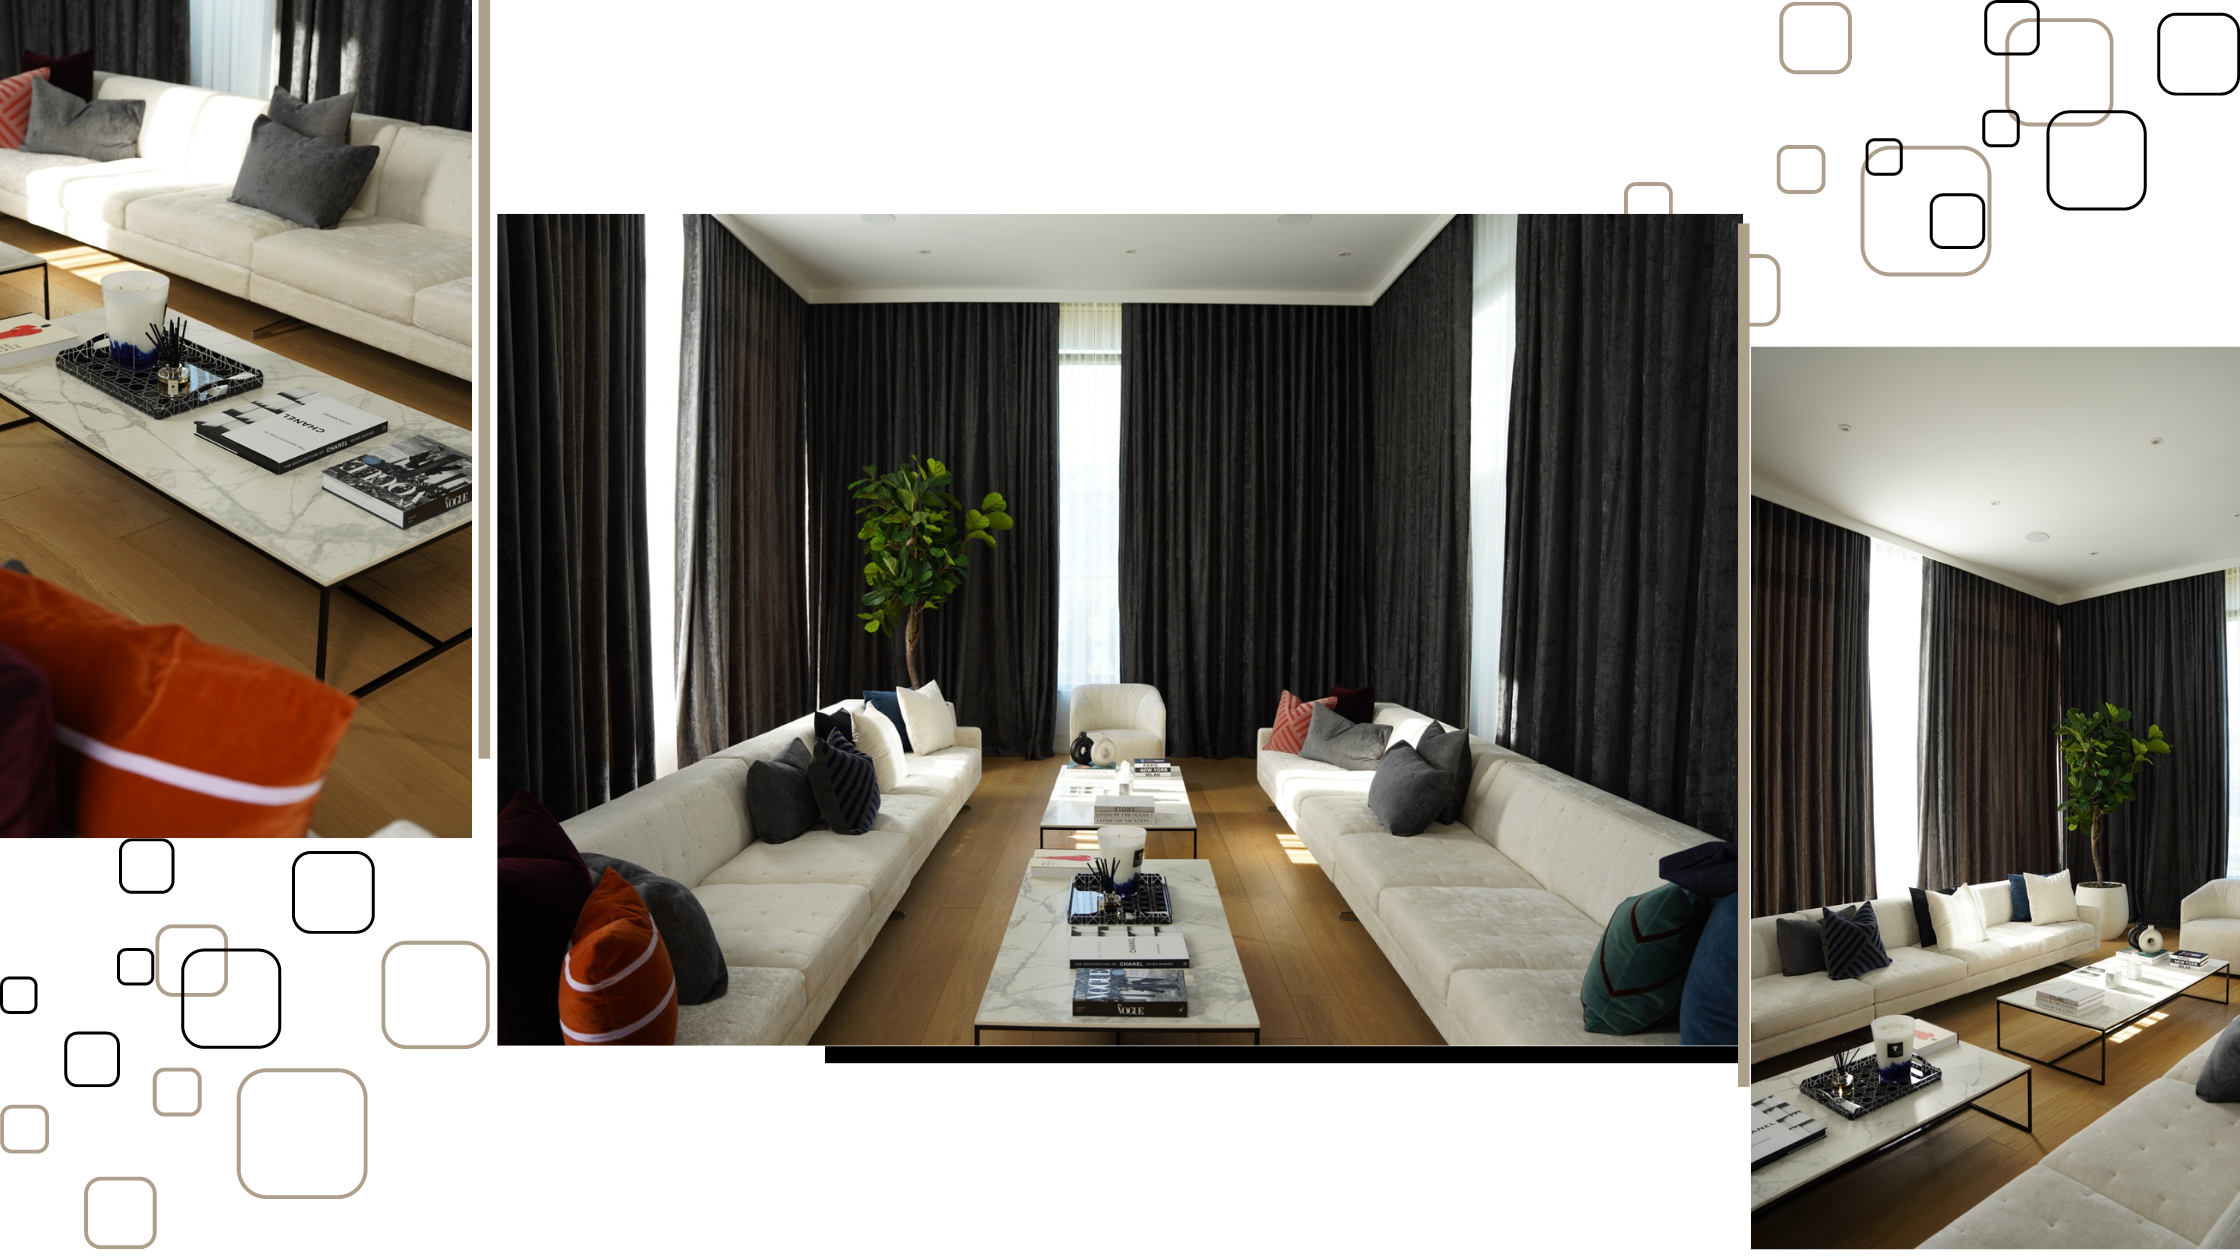 living room interior design home decor inspiration